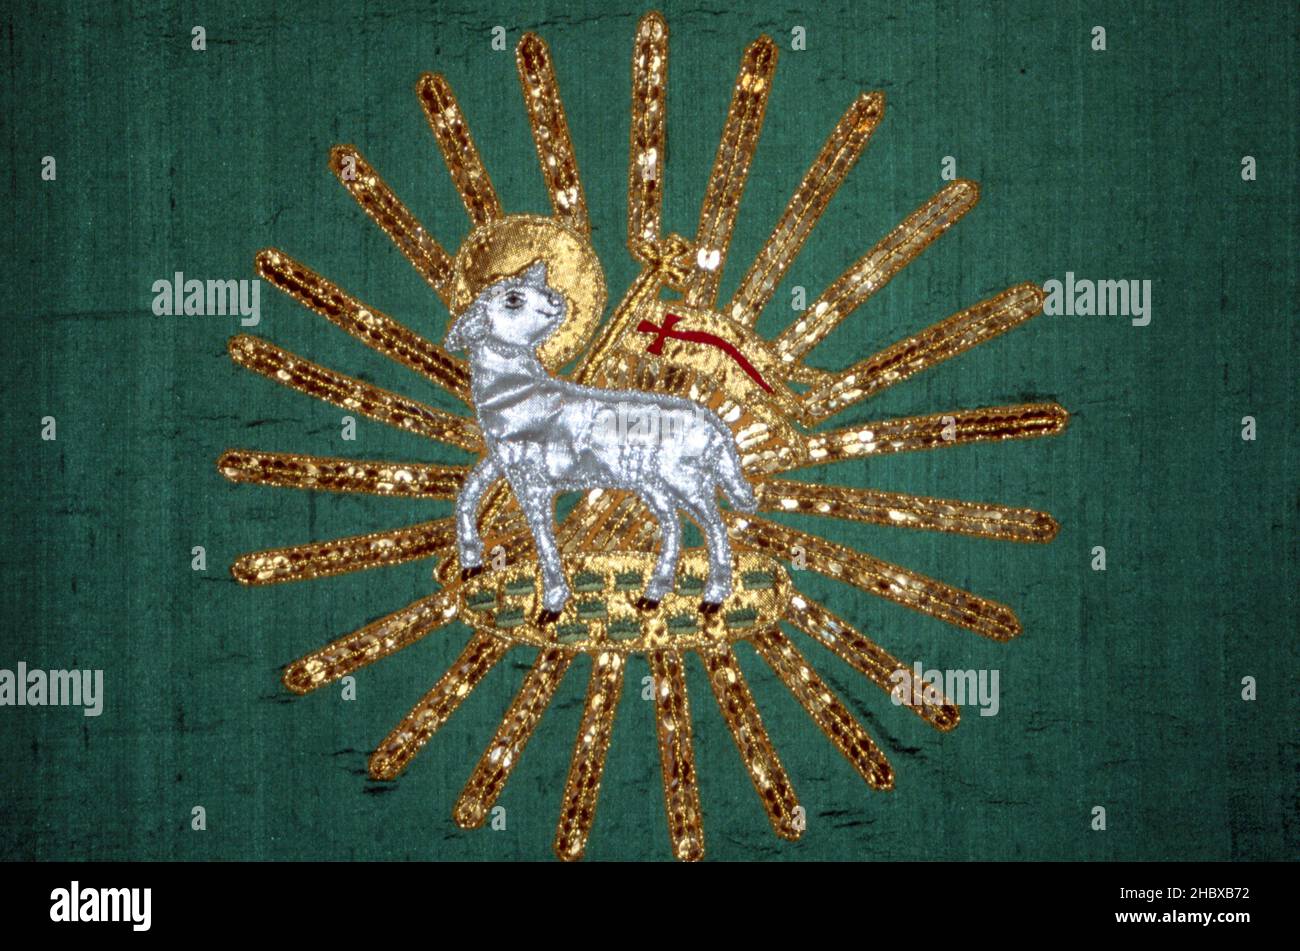 Makelloses Passahlamm mit einem Weihnachtssternenkreuz, Christus, der Erlöser. Glänzendes, besticktes silbernes Lamm mit goldenem Stern auf grünem Hintergrund Stockfoto